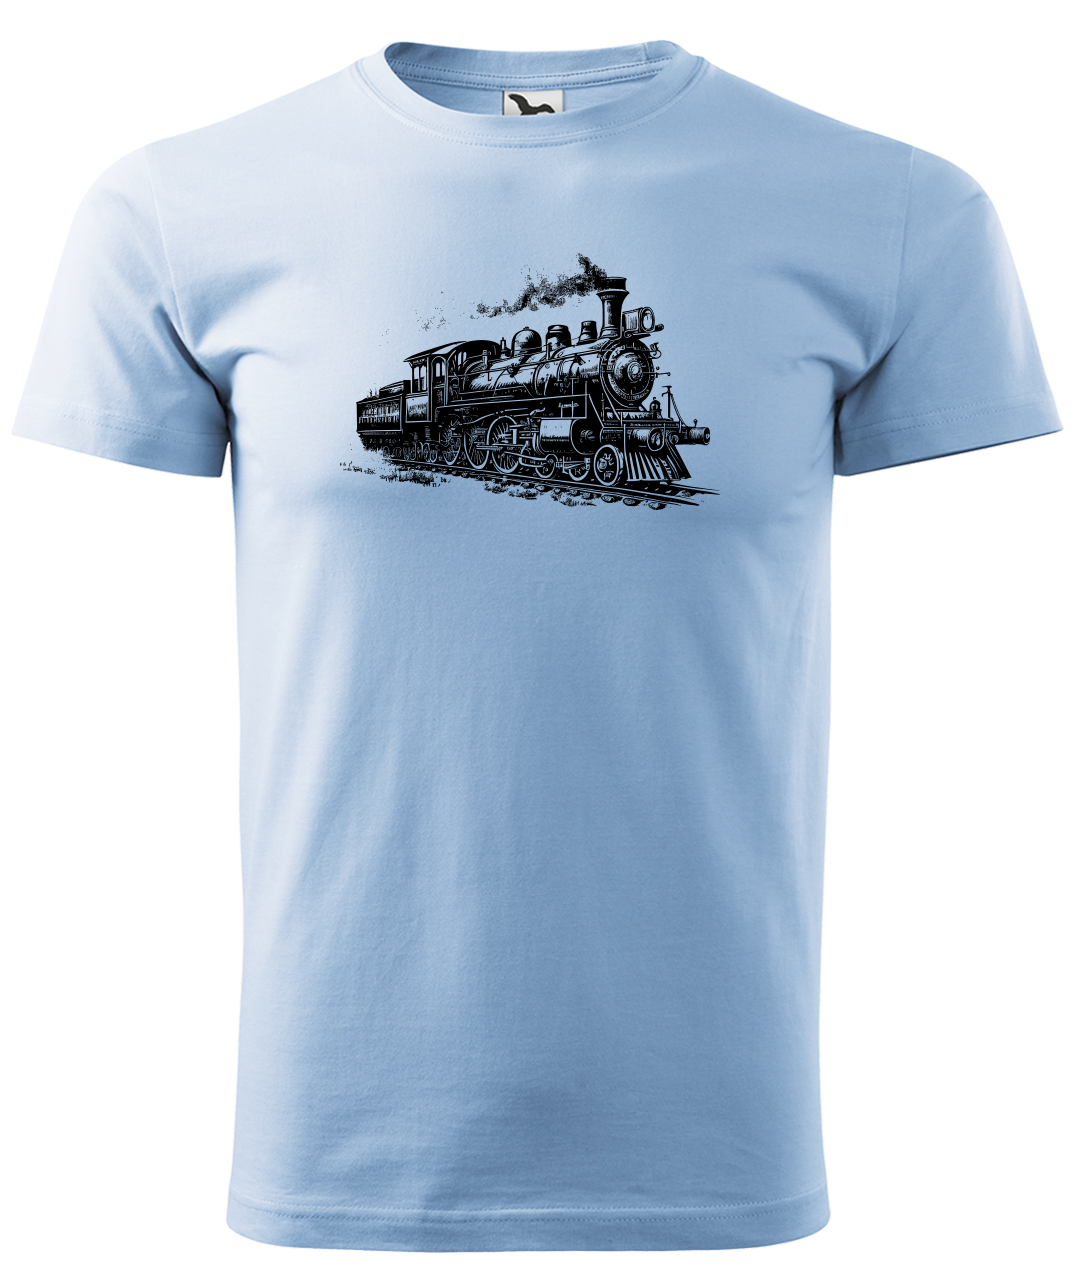 Dětské tričko s vlakem - Stará lokomotiva Velikost: 4 roky / 110 cm, Barva: Nebesky modrá (15)